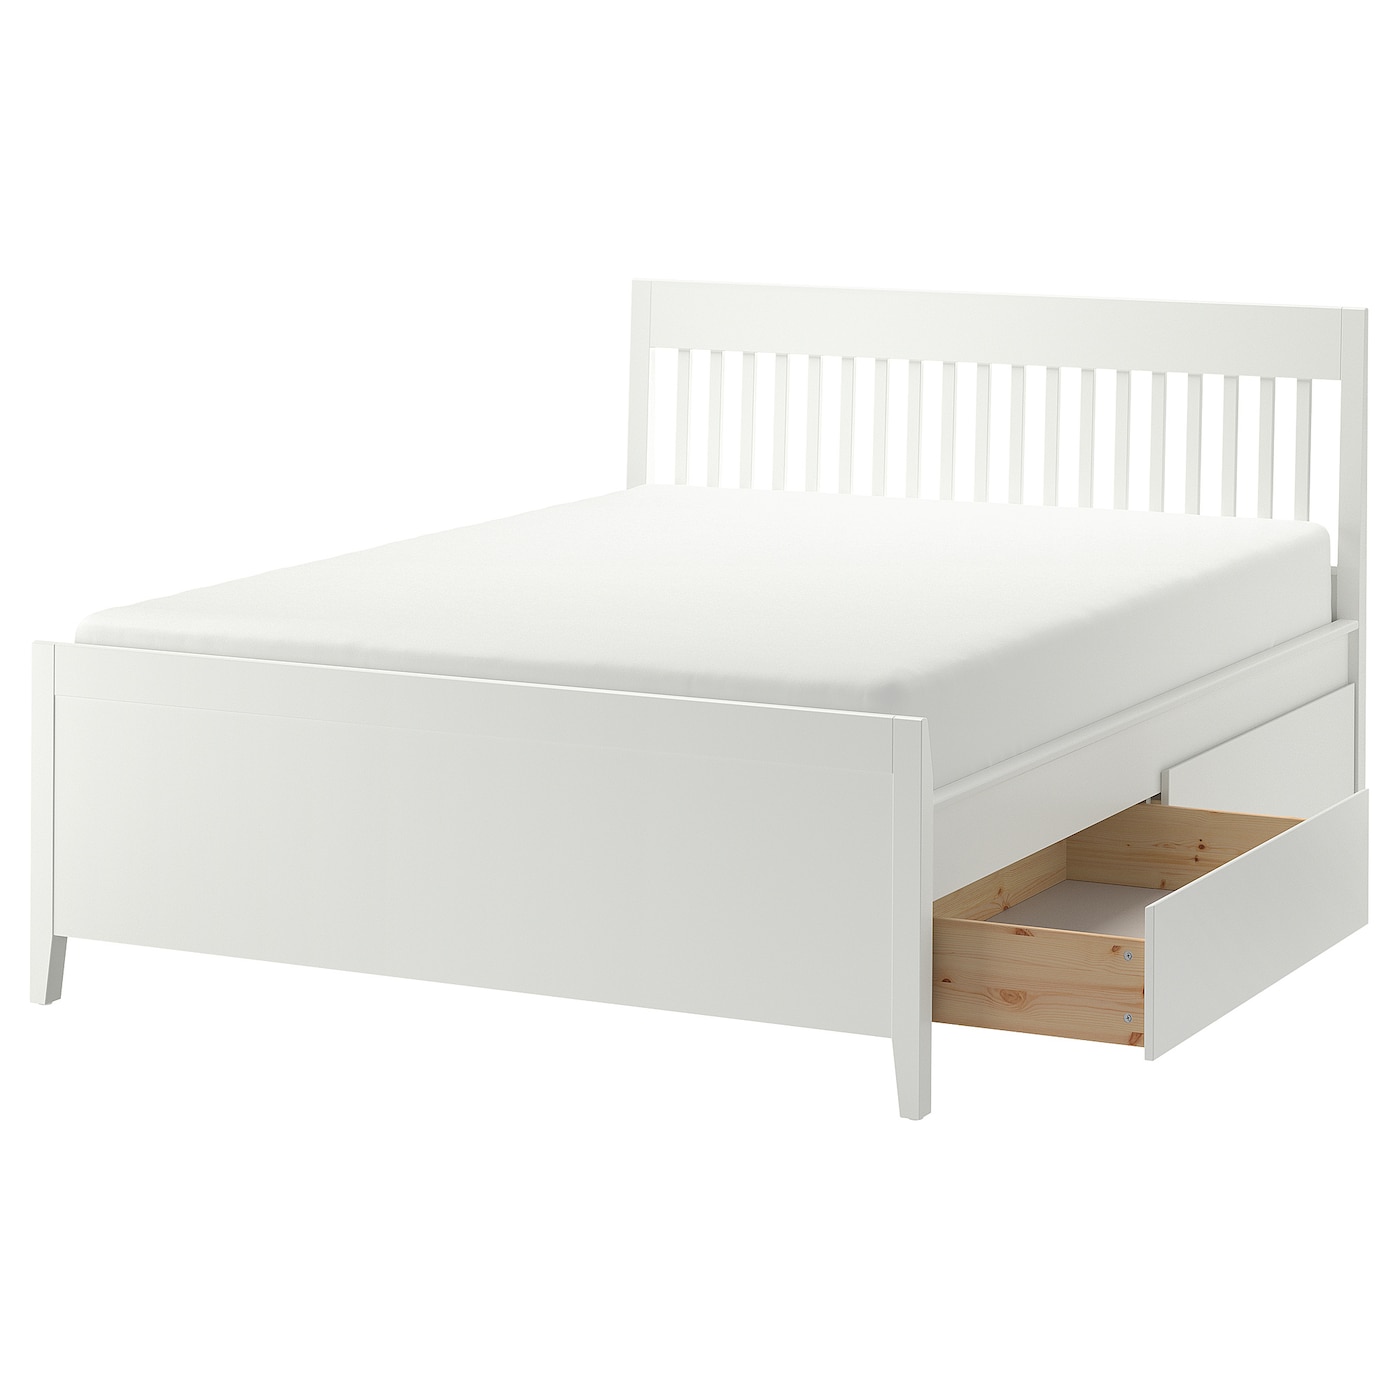 Каркас кровати с ящиками - IKEA IDANÄS/IDANAS, 200х140 см, белый, ИДАНЭС ИКЕА